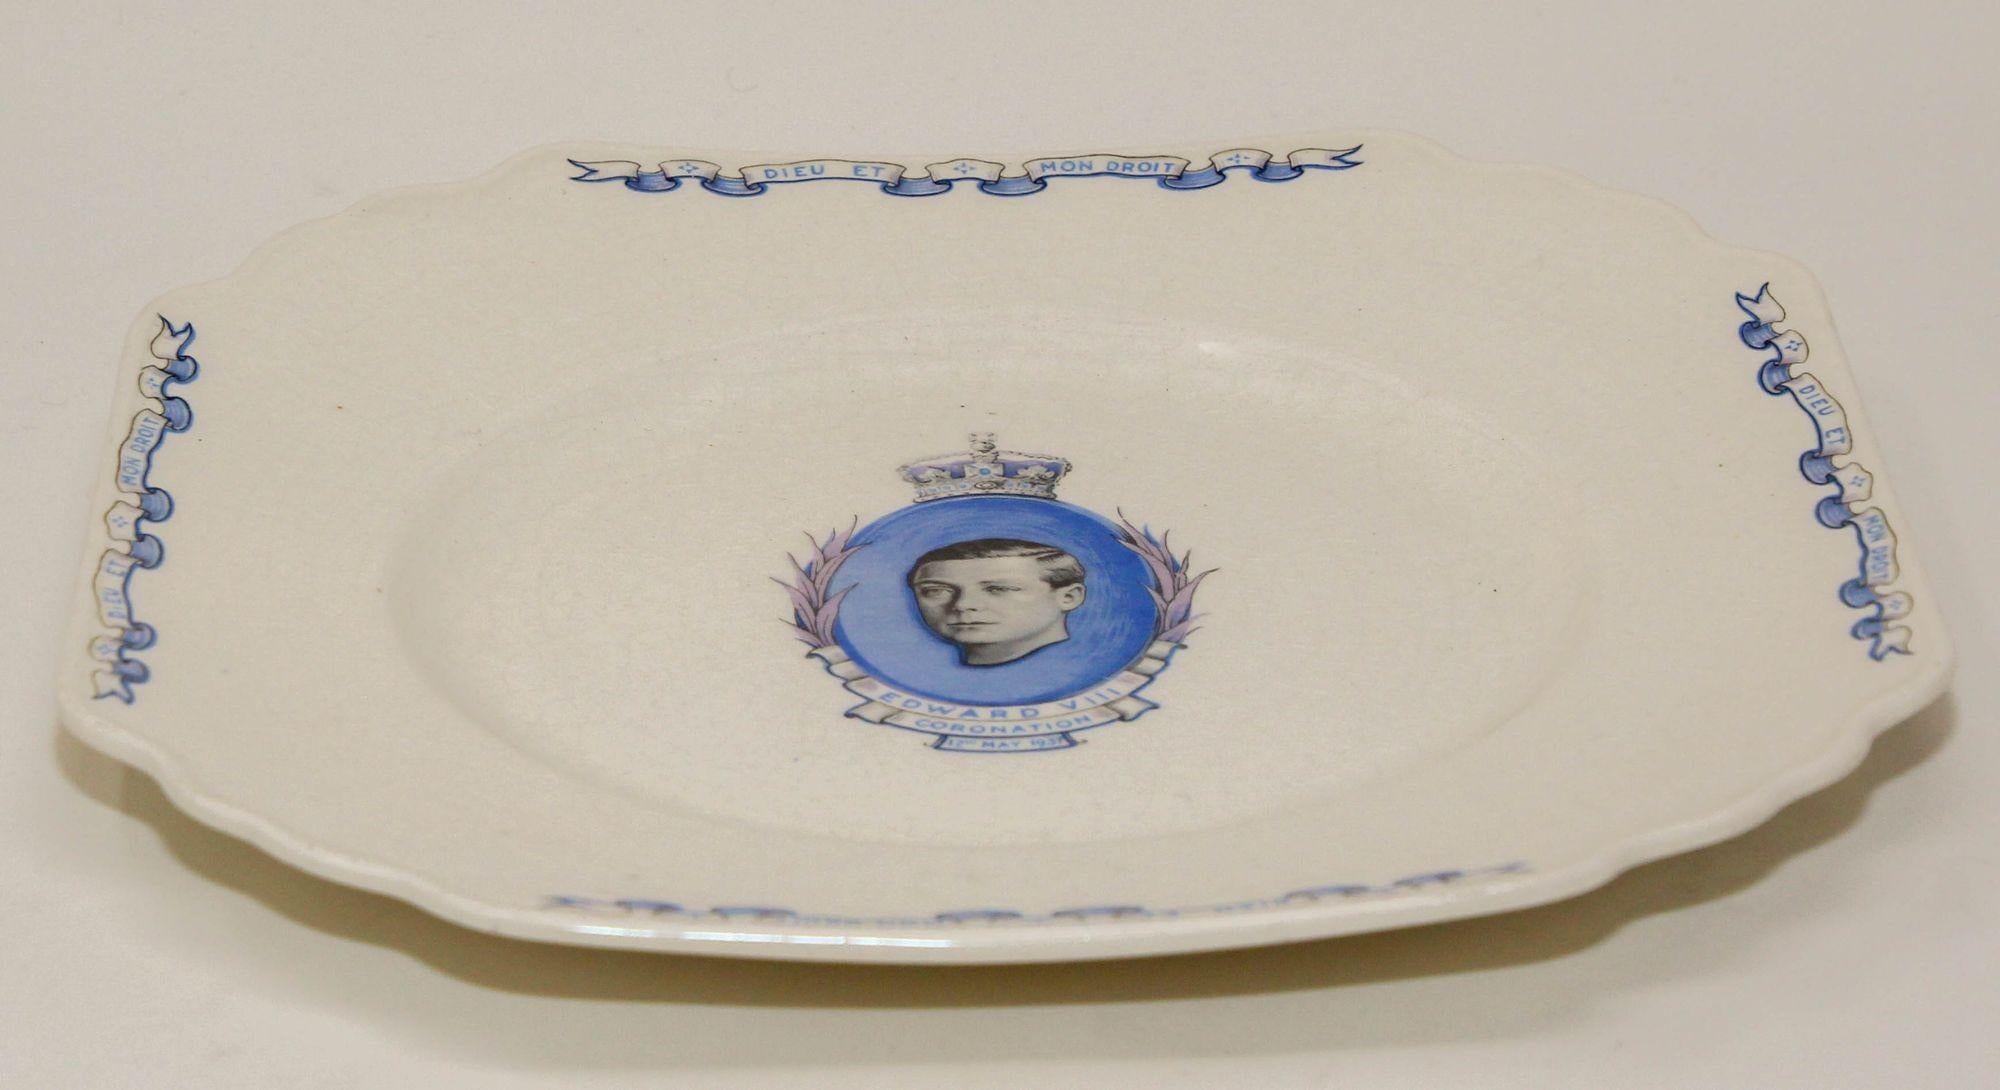 Assiette de couronnement en porcelaine de collection royale Edward VIII 1936 Wedgewood Angleterre 5